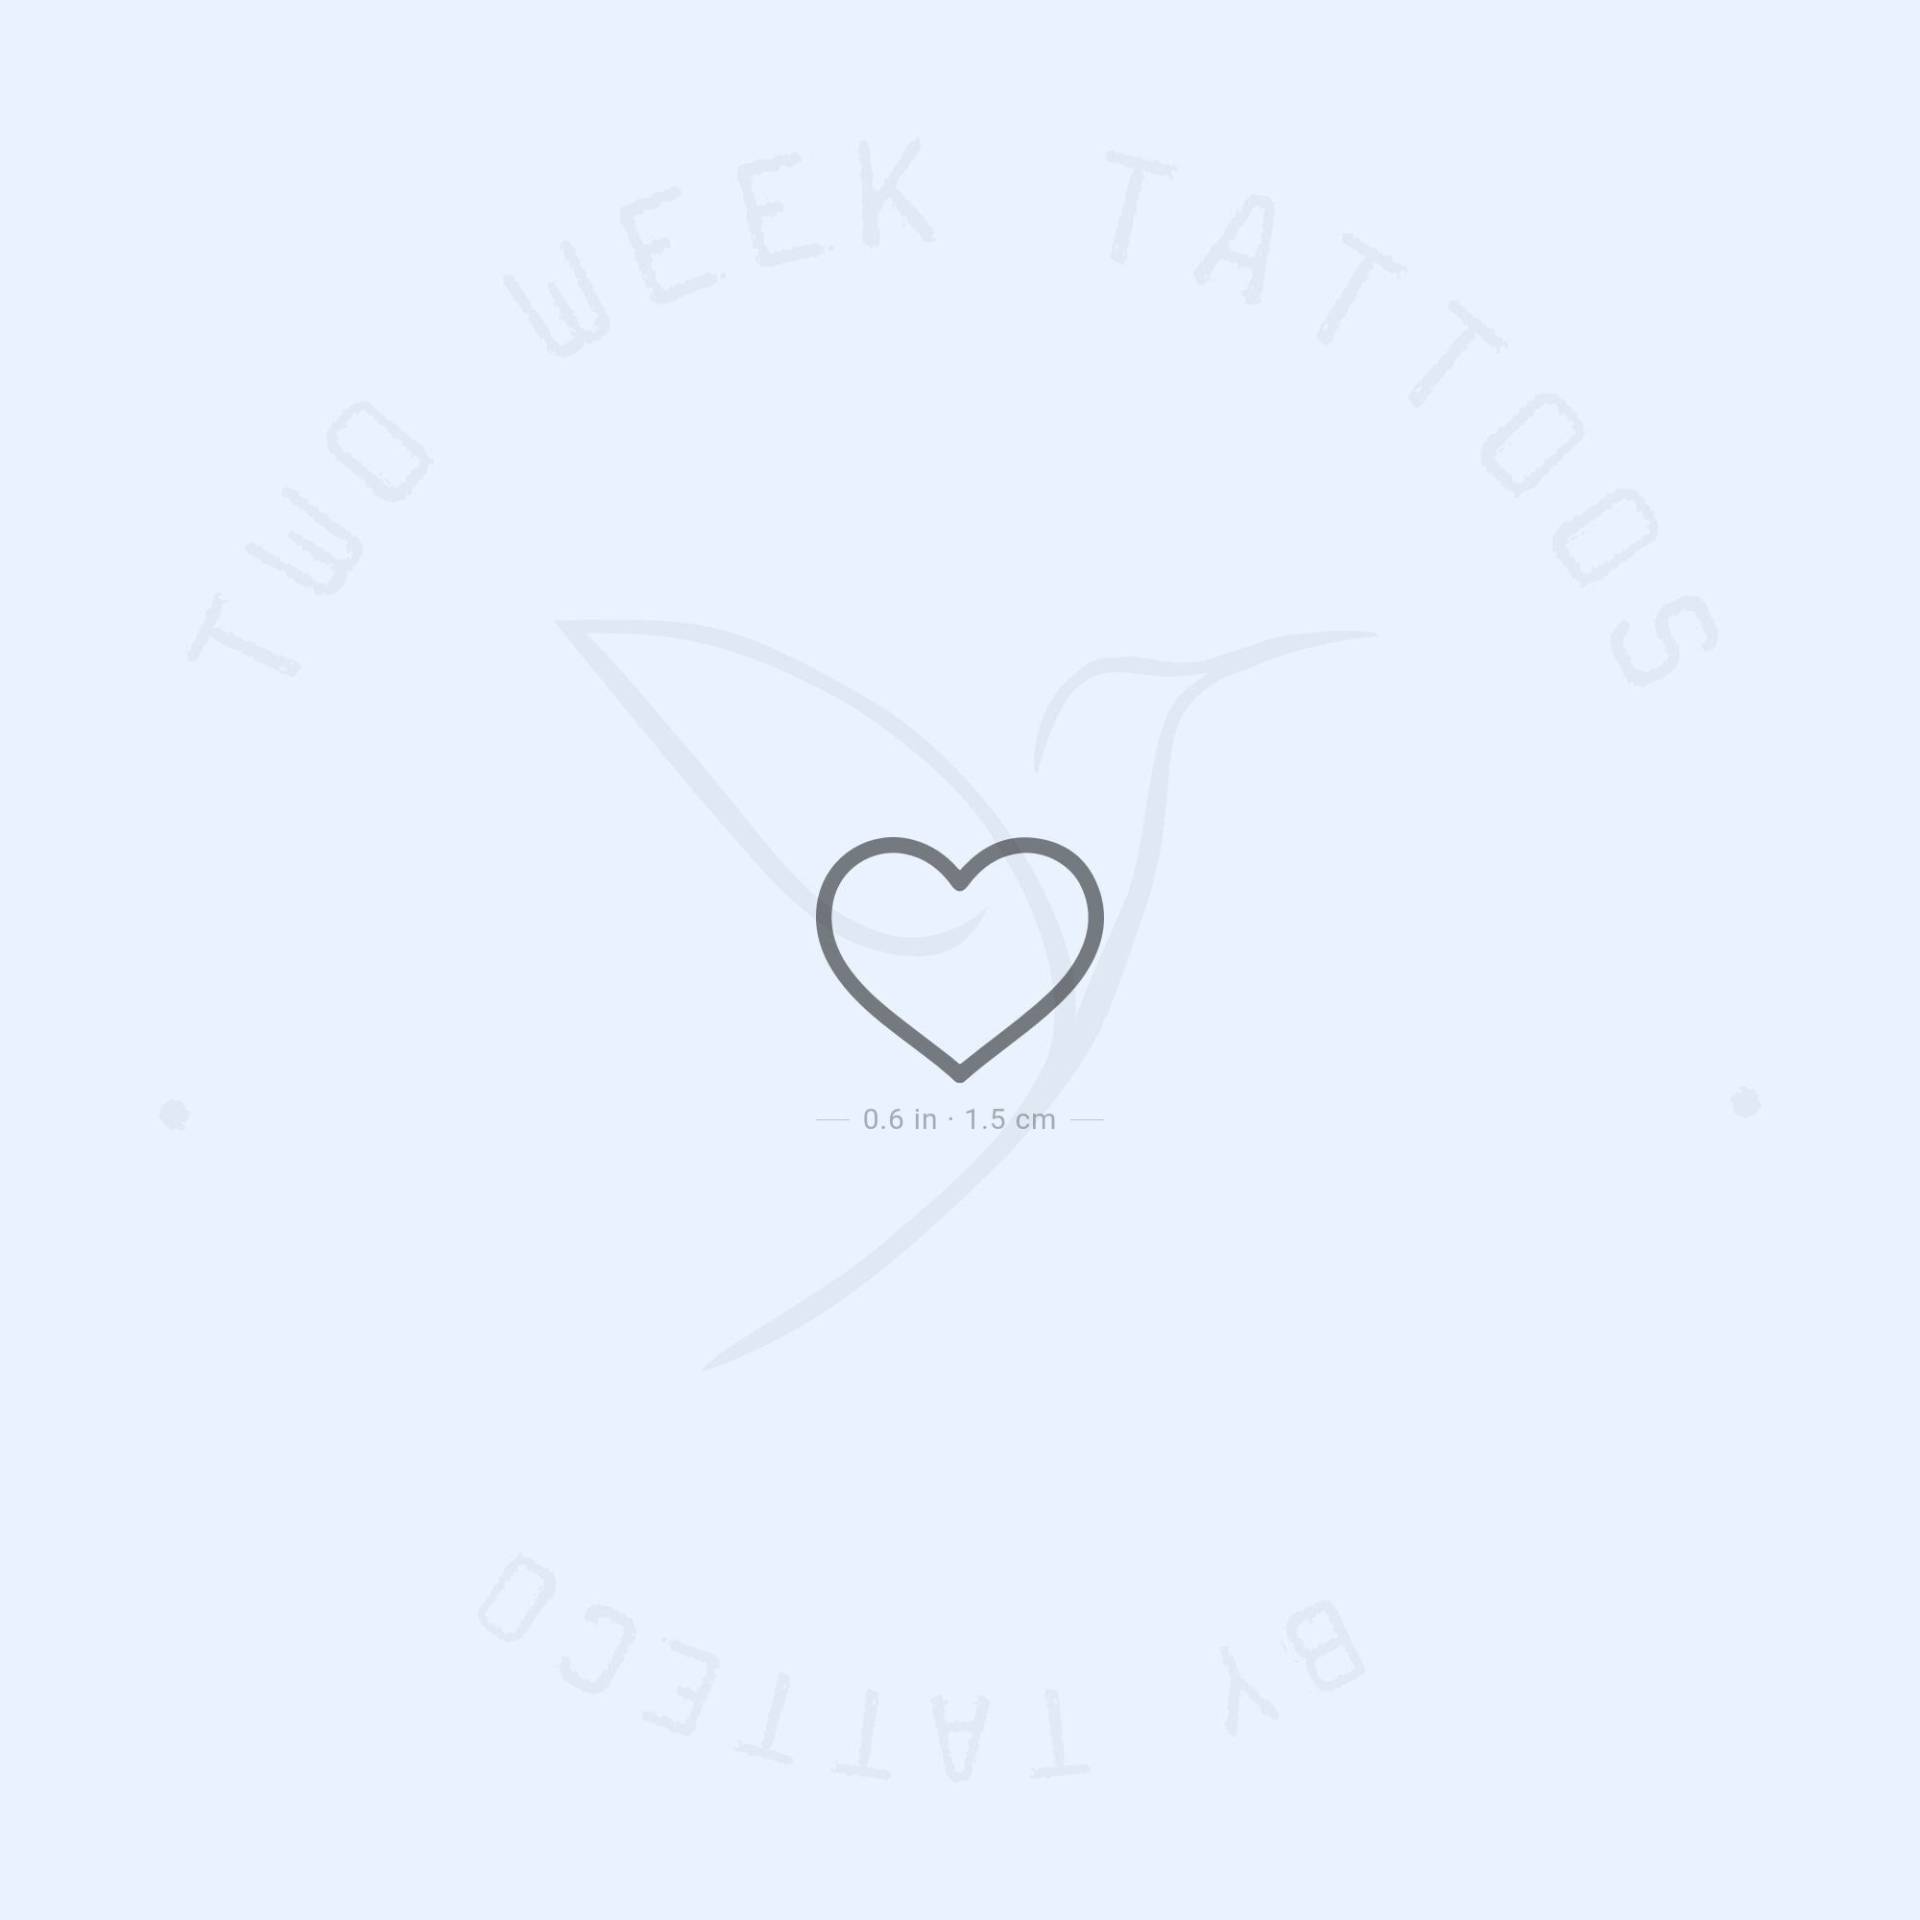 Herz Umriss Semi-Permanent Tattoo | 2Er Set von Etsy - twoweektattoos